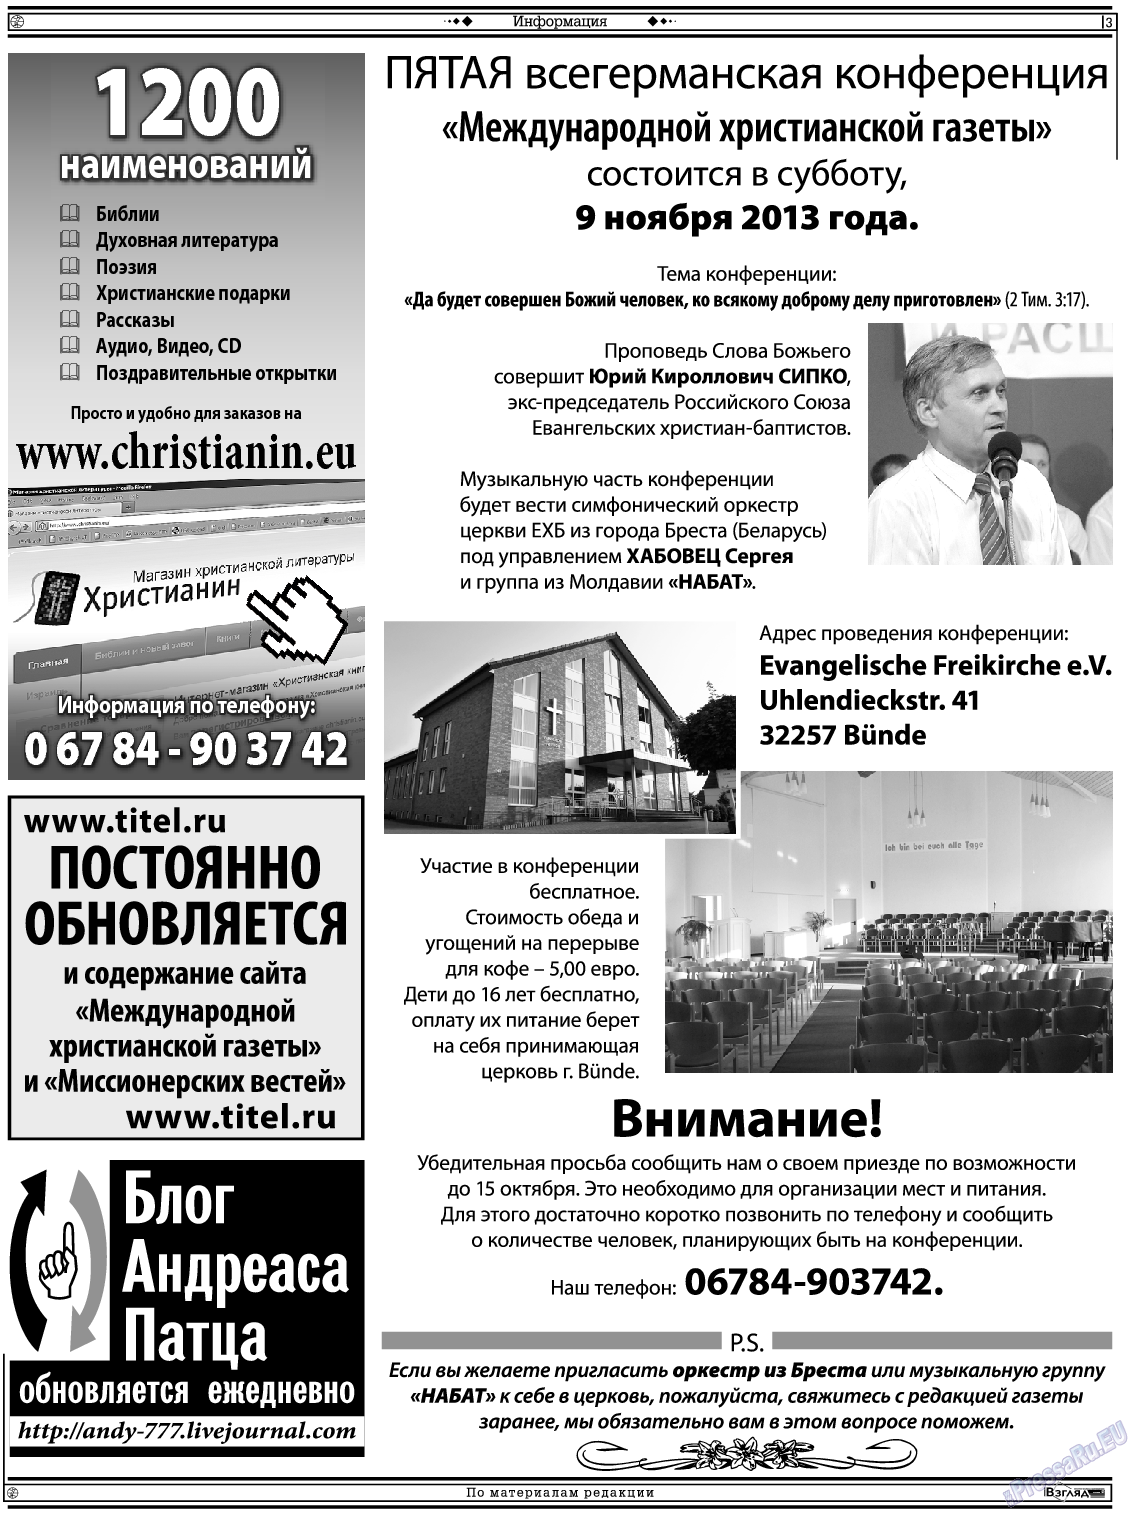 Христианская газета, газета. 2013 №8 стр.17